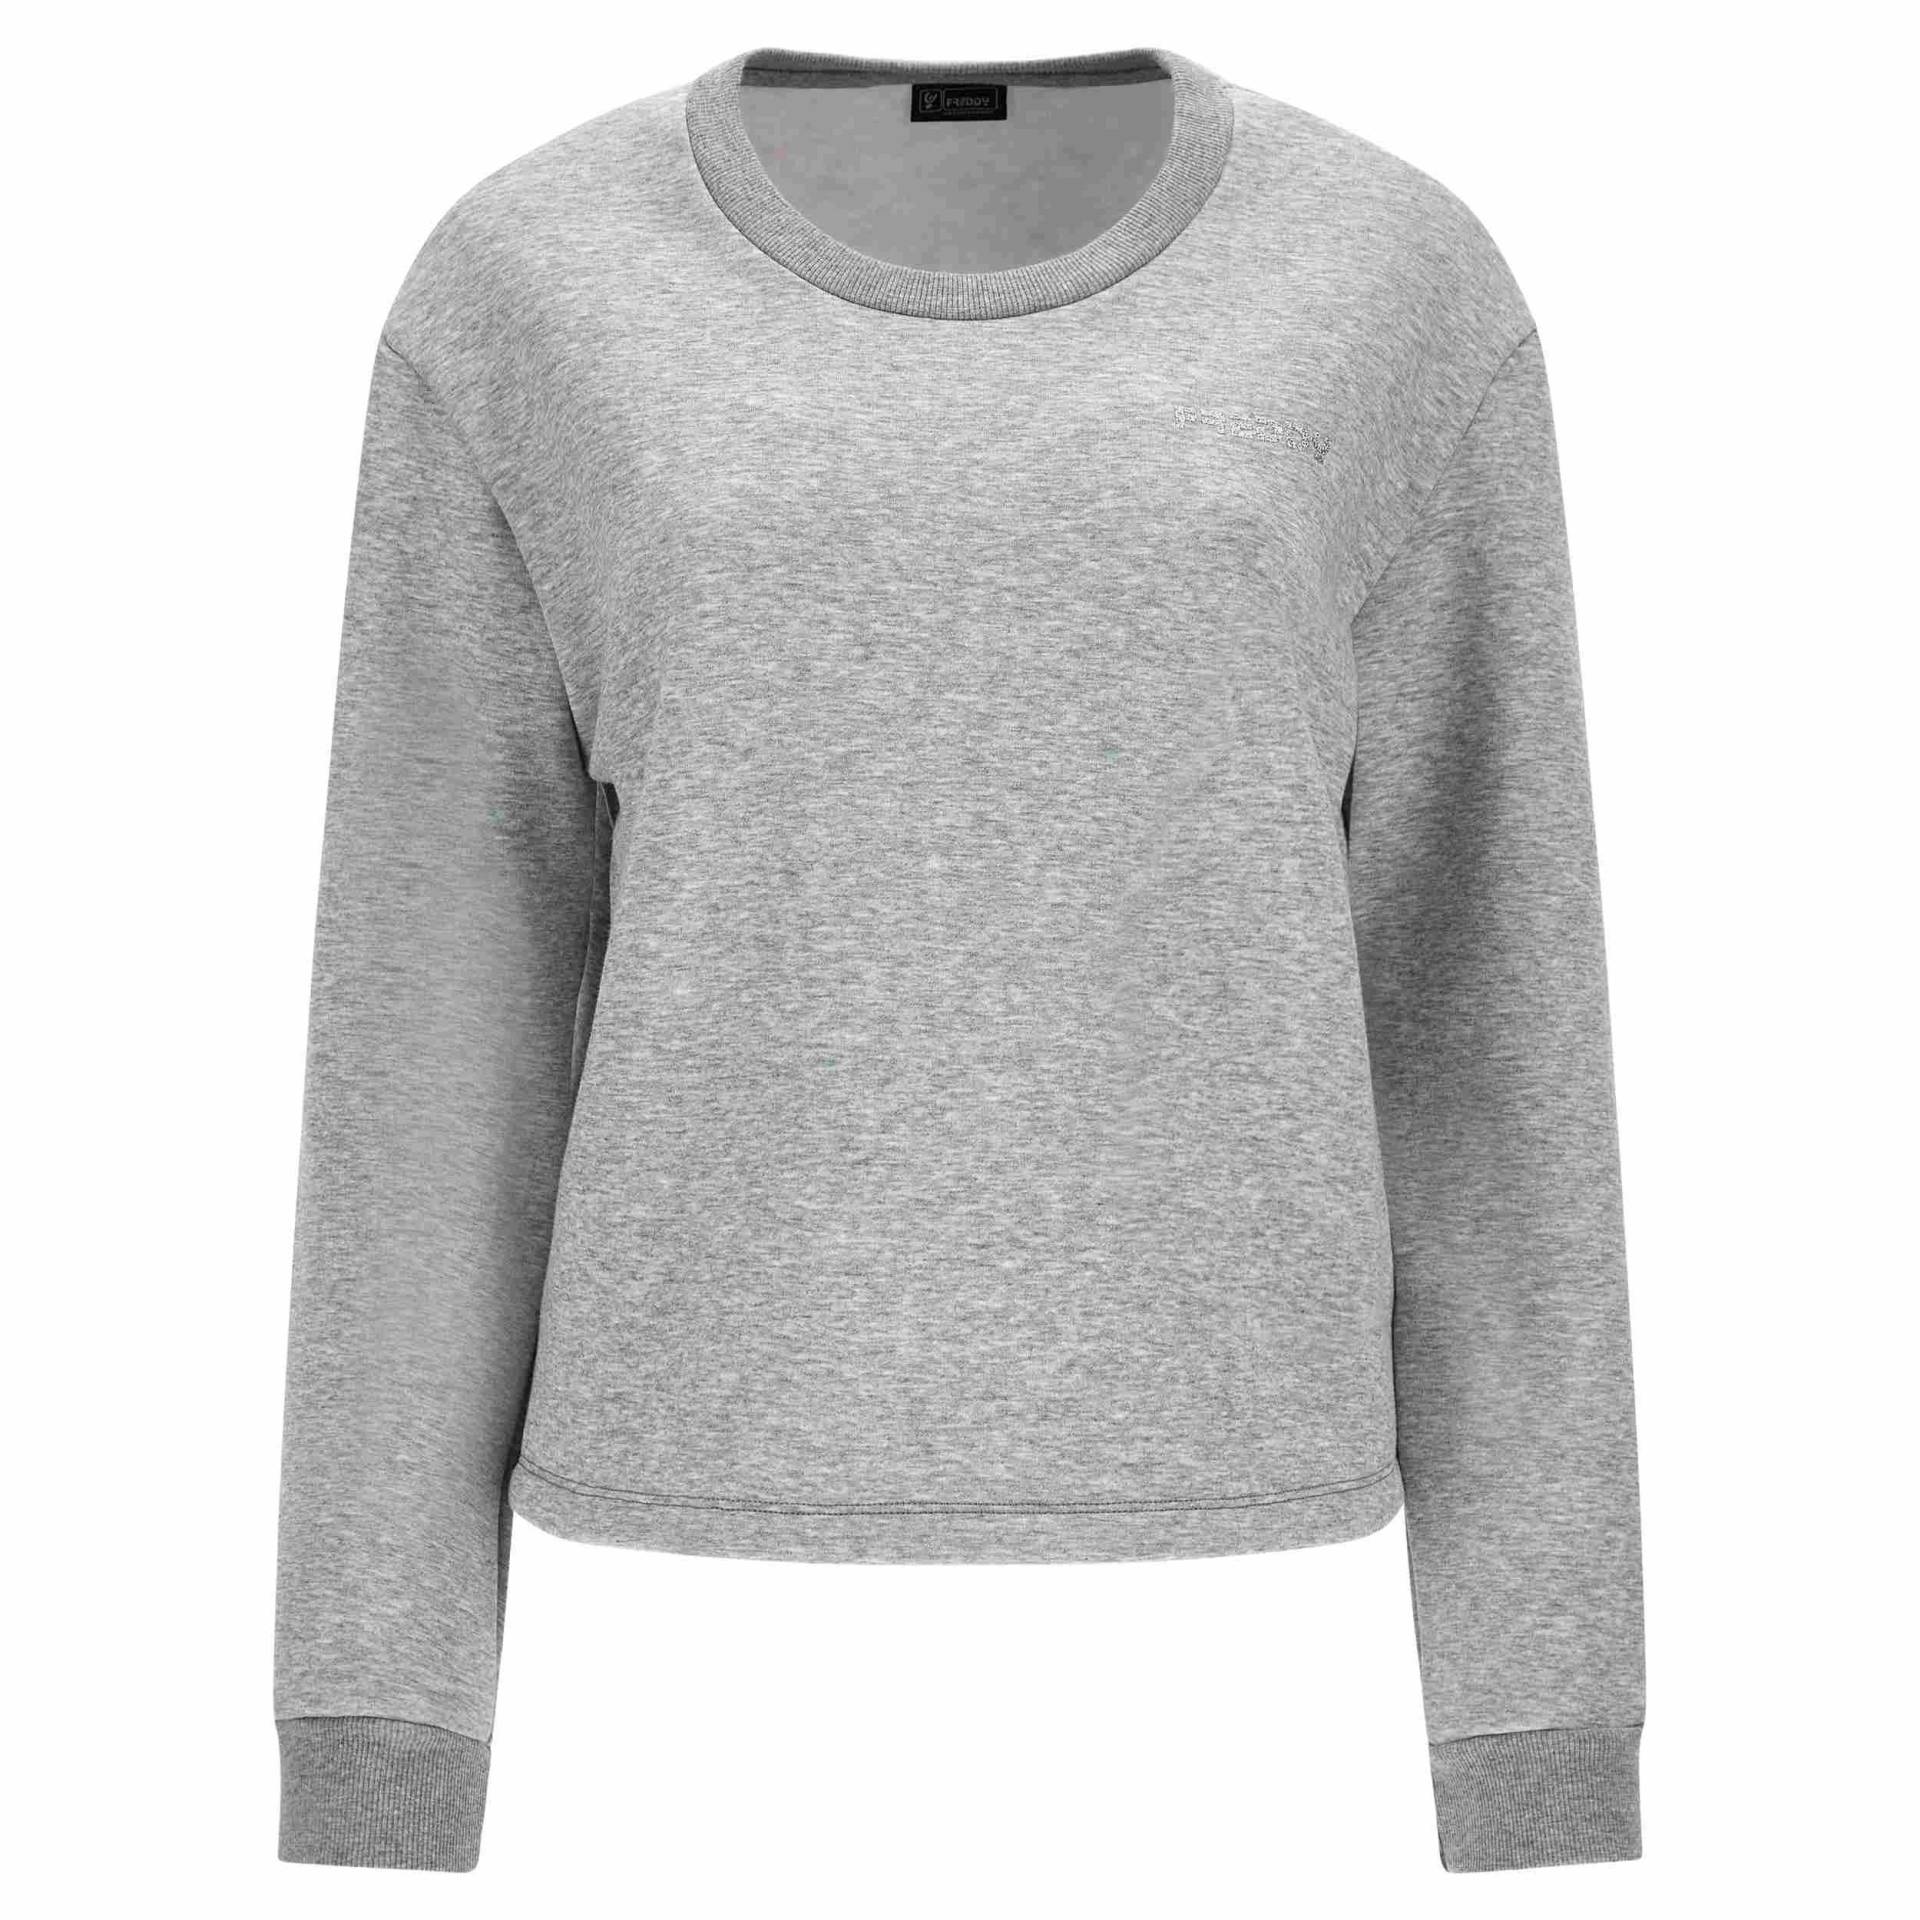 Sweatshirt Damen Grau XL von FREDDY